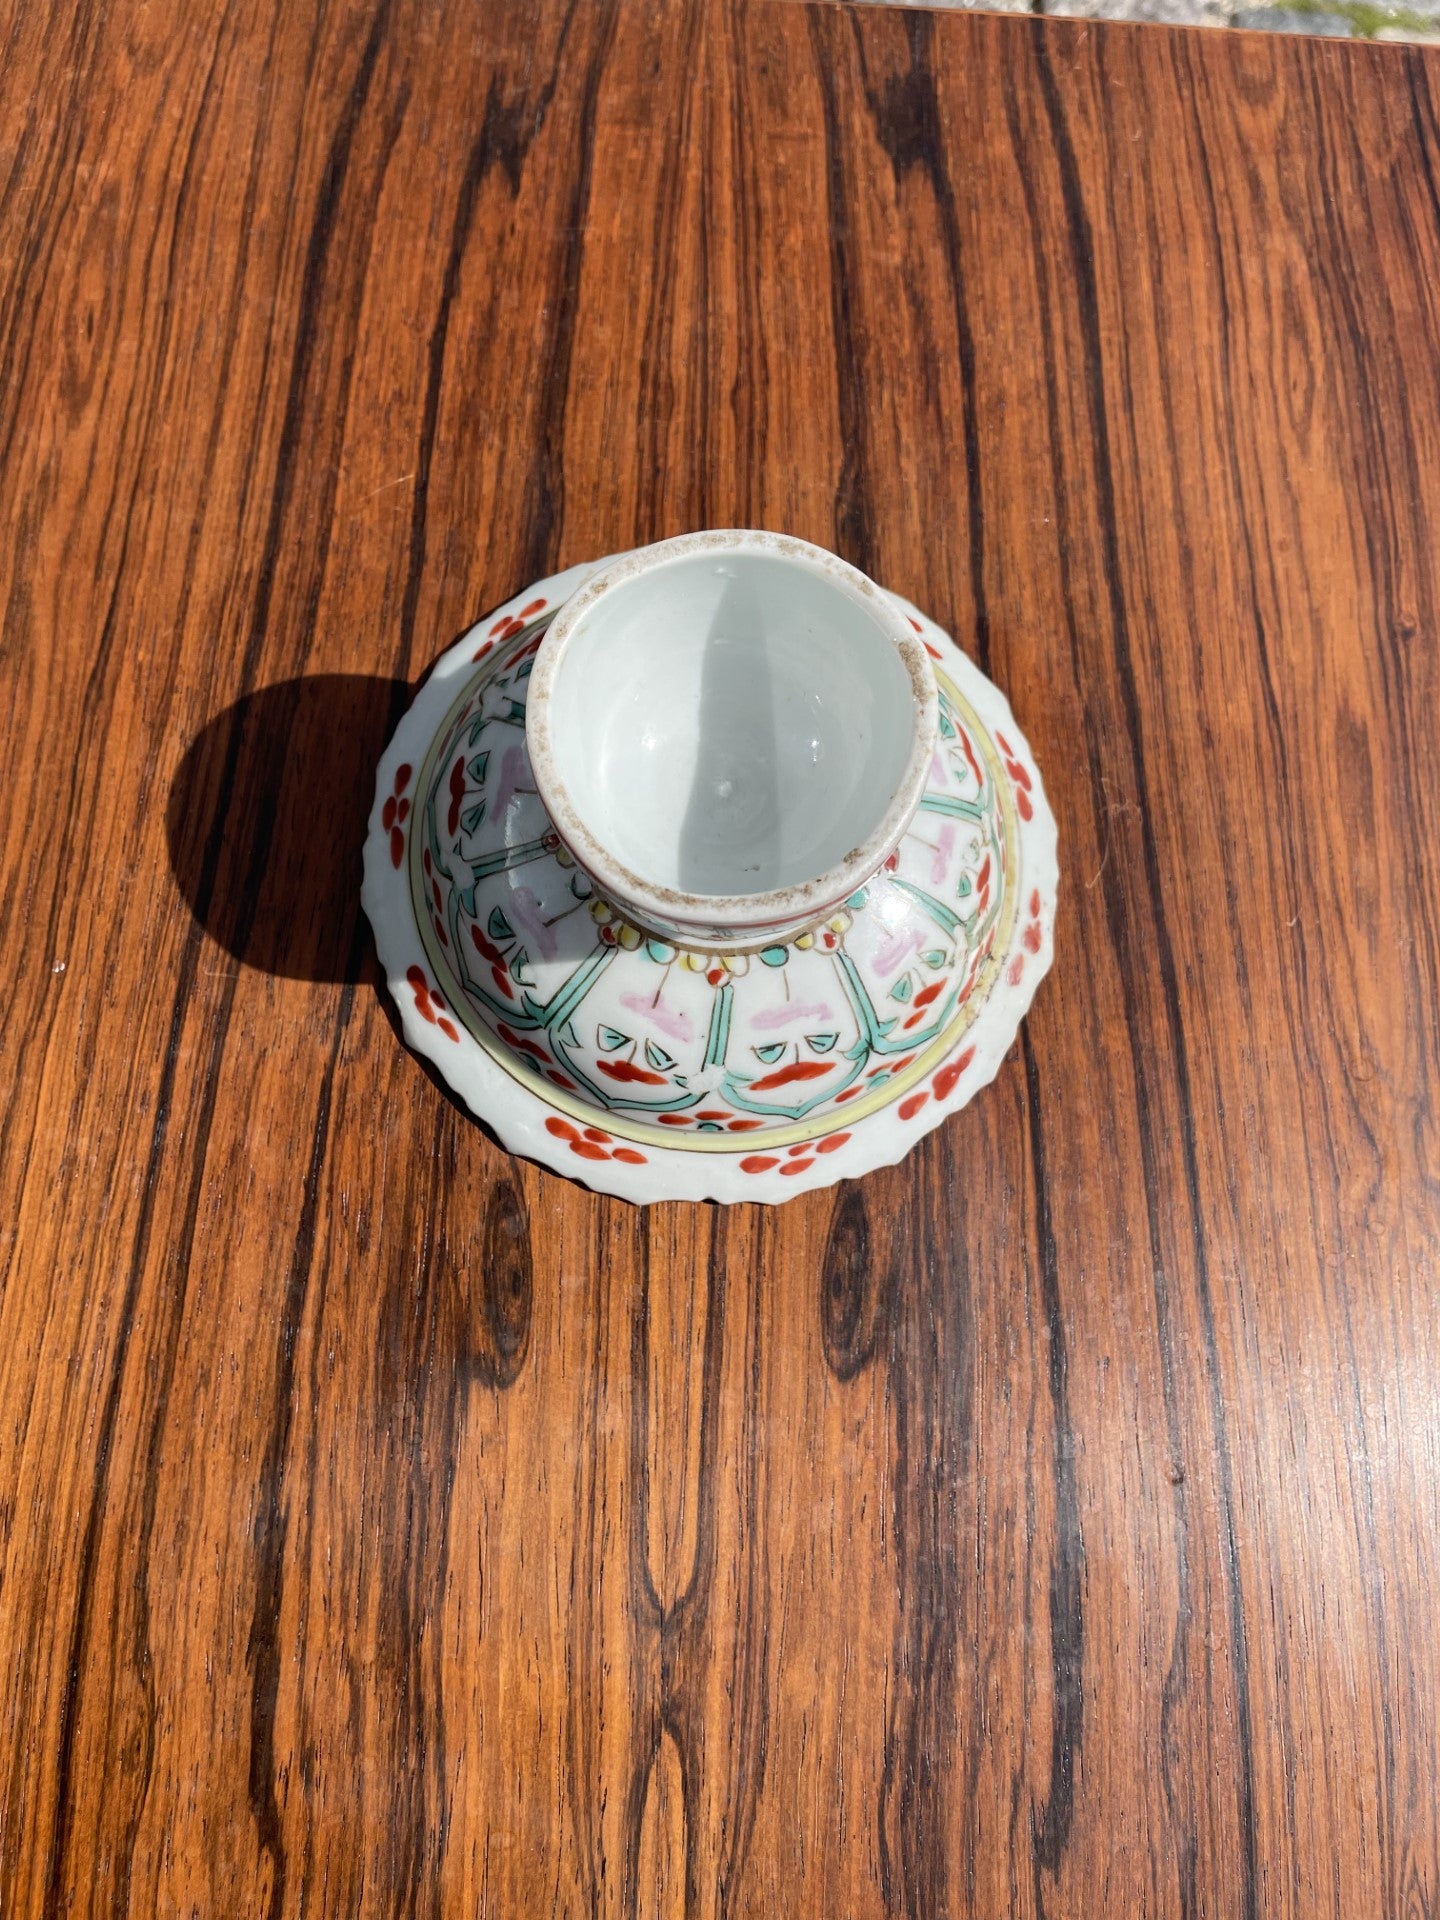 Sjældent porcelæn famille rose antik stilk fad fra 1800-tallet - nr. 012006